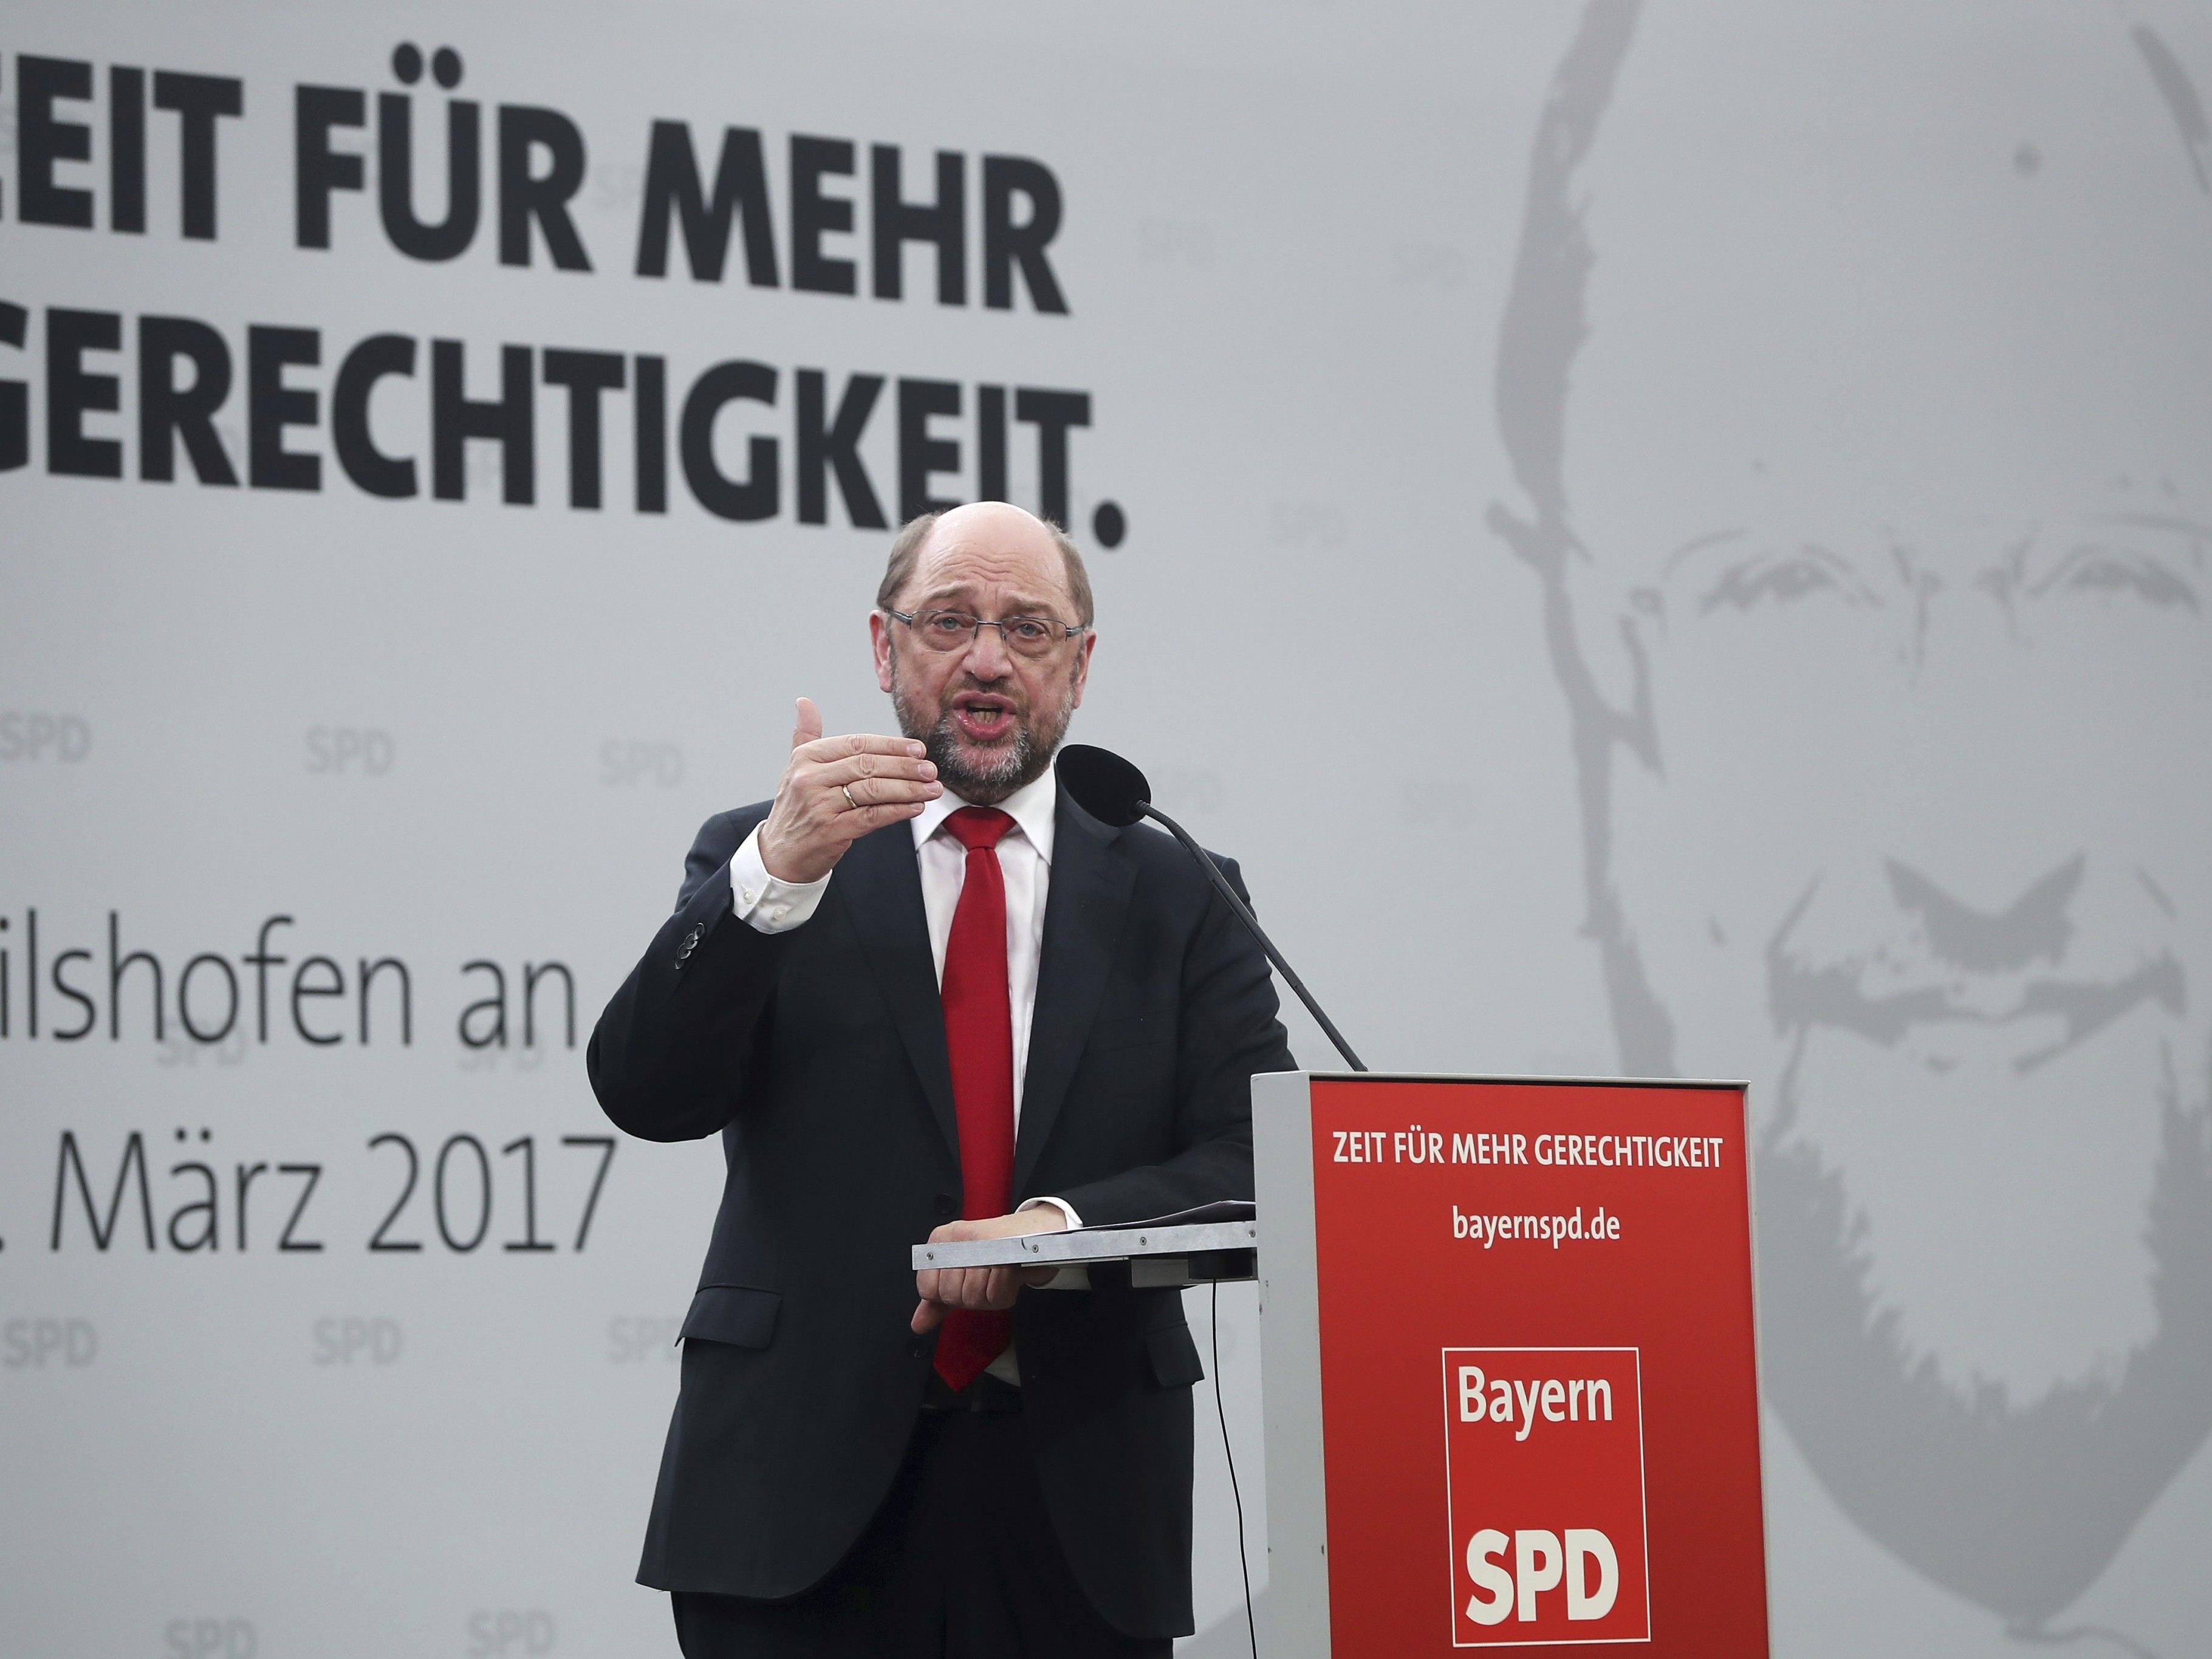 Hat Martin Schulz Chancen, nächster deutscher Kanzler zu werden?